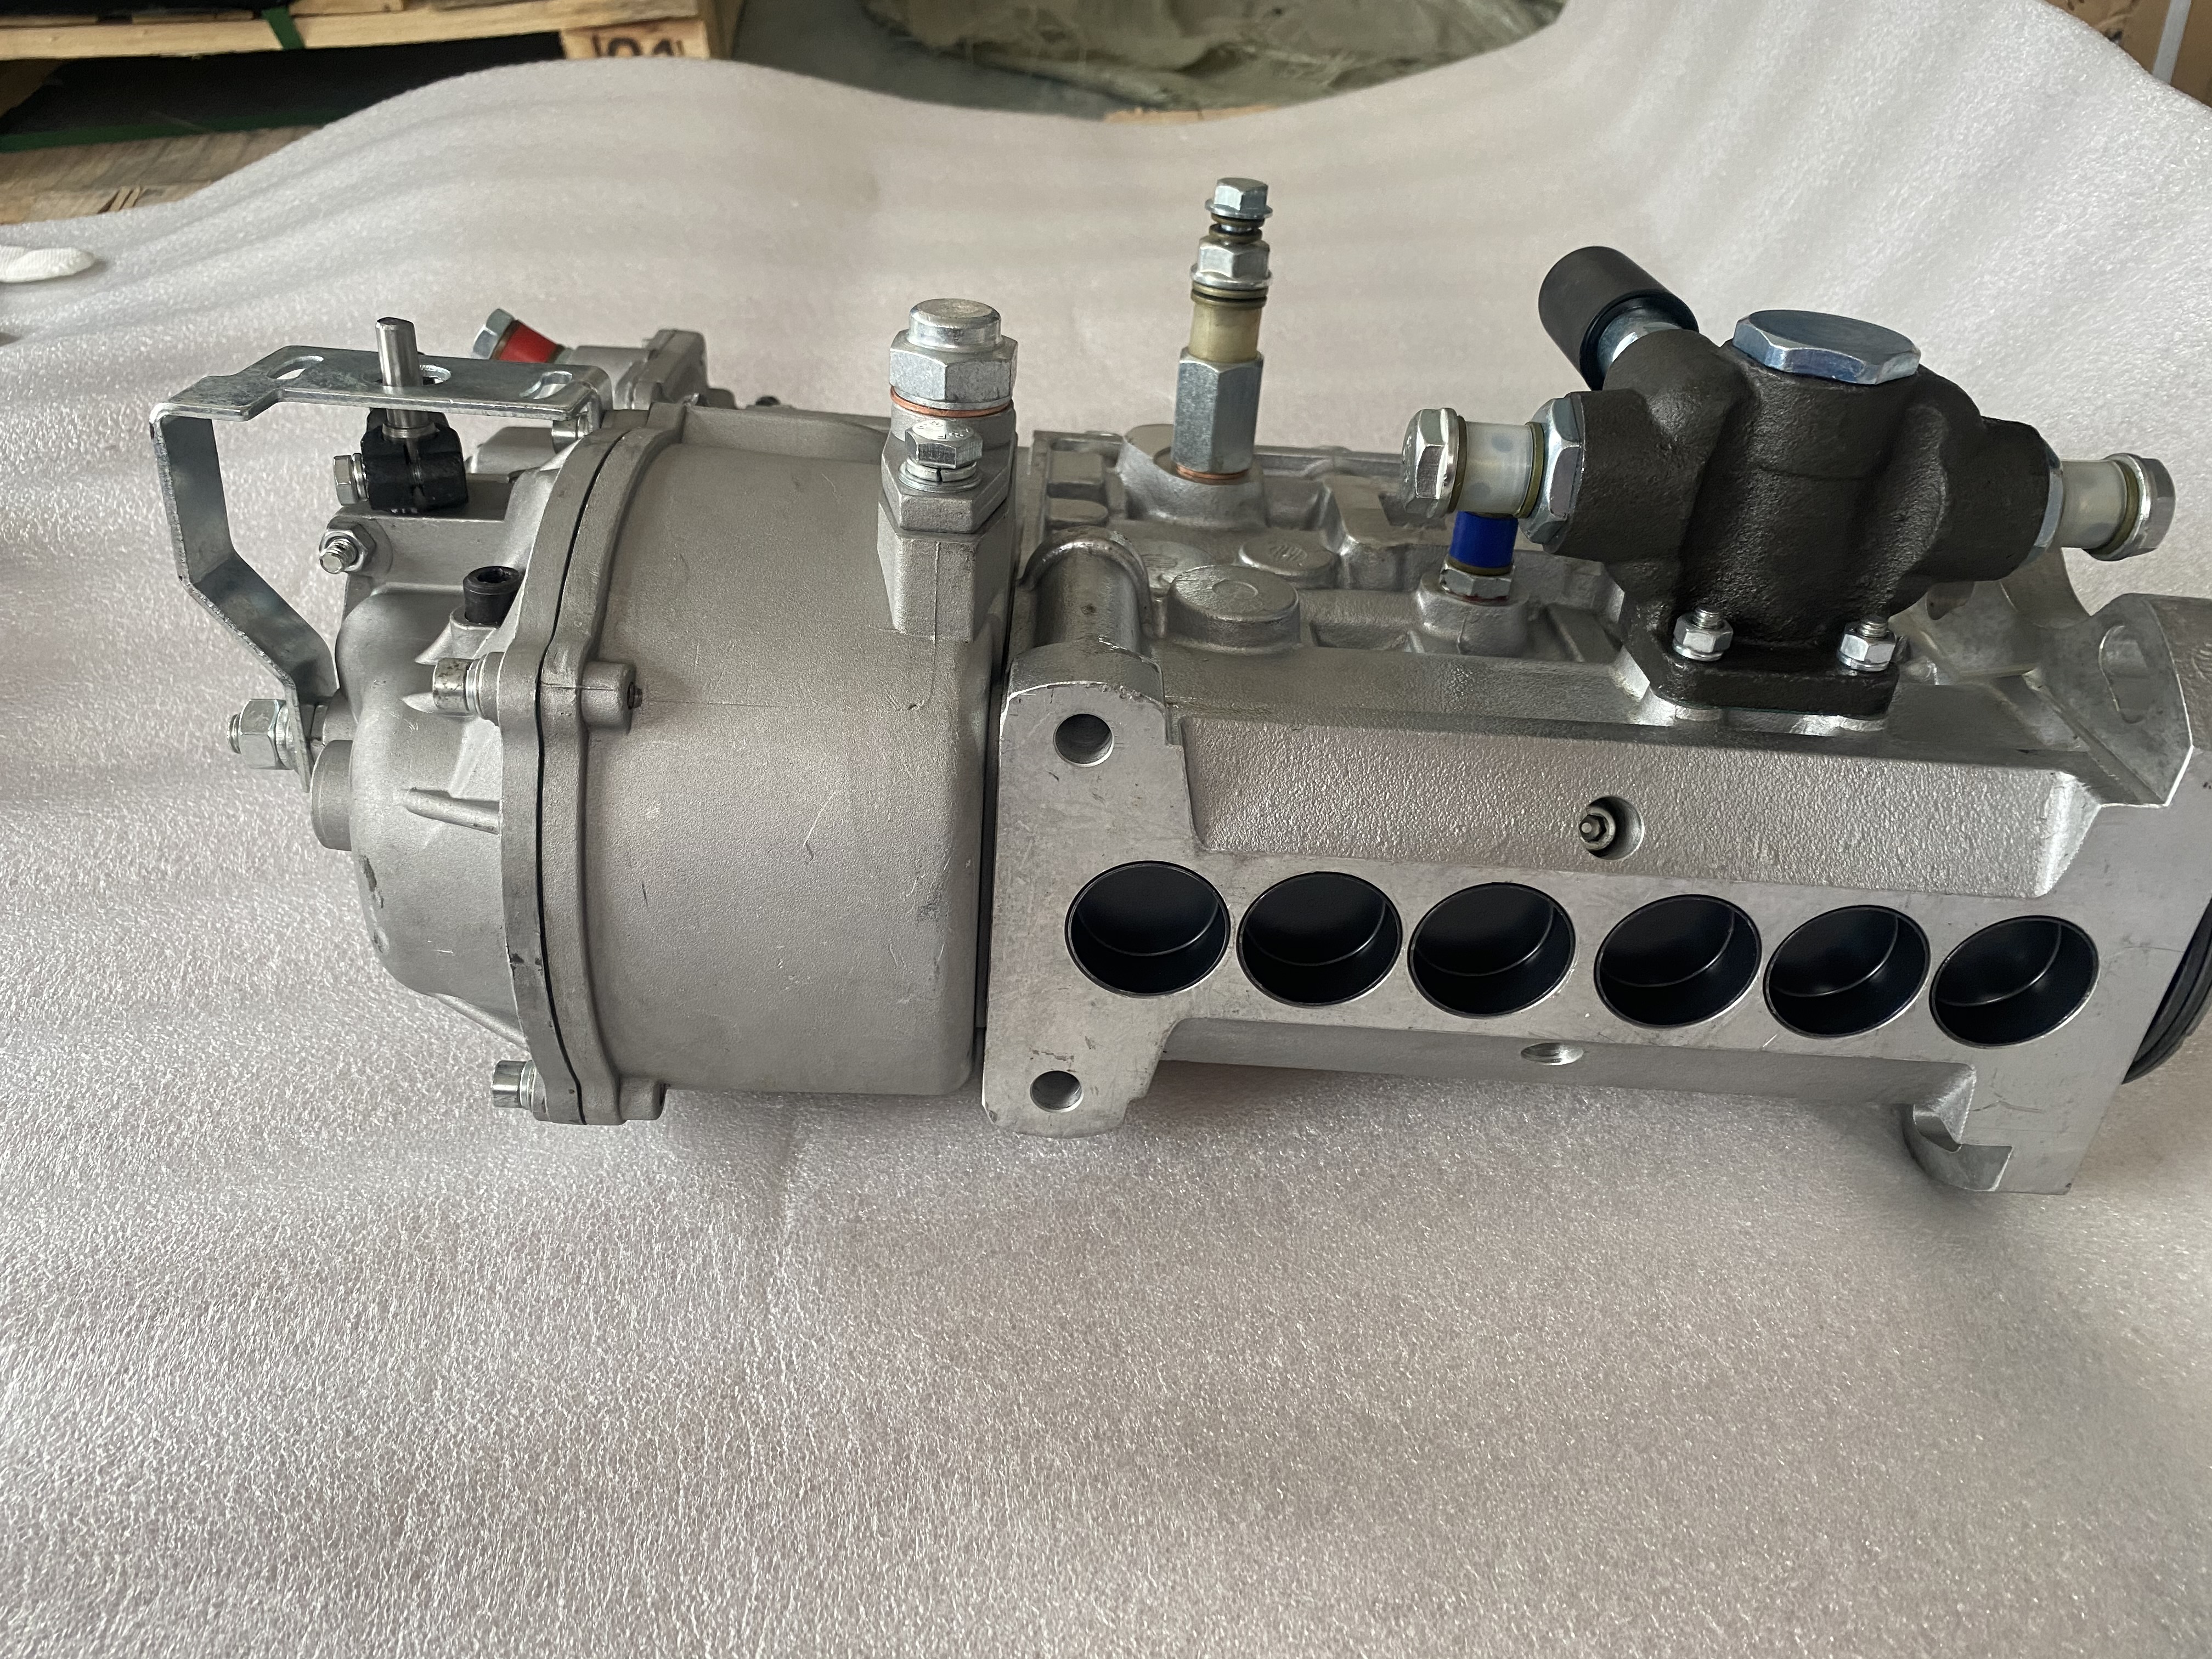 WEICHAI Original Injection Pump EBHF6H 612601080376 for WP10 Diesel Engine